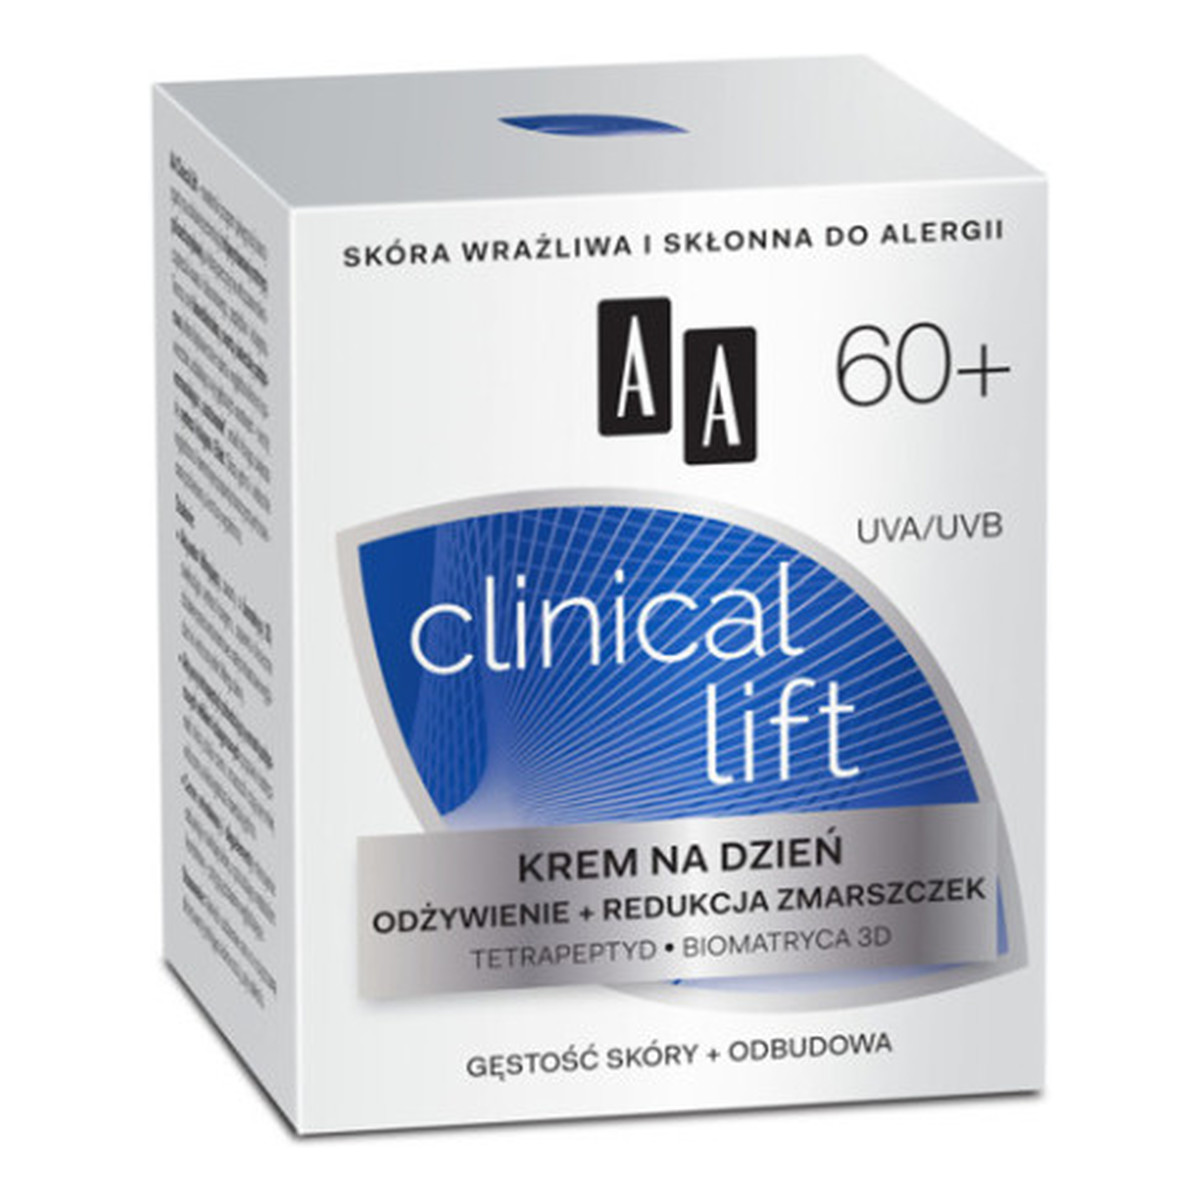 AA 60+ Clinical Lift Krem Do Twarzy Na Dzień Odżywienie i Redukcja Zmarszczek 50ml